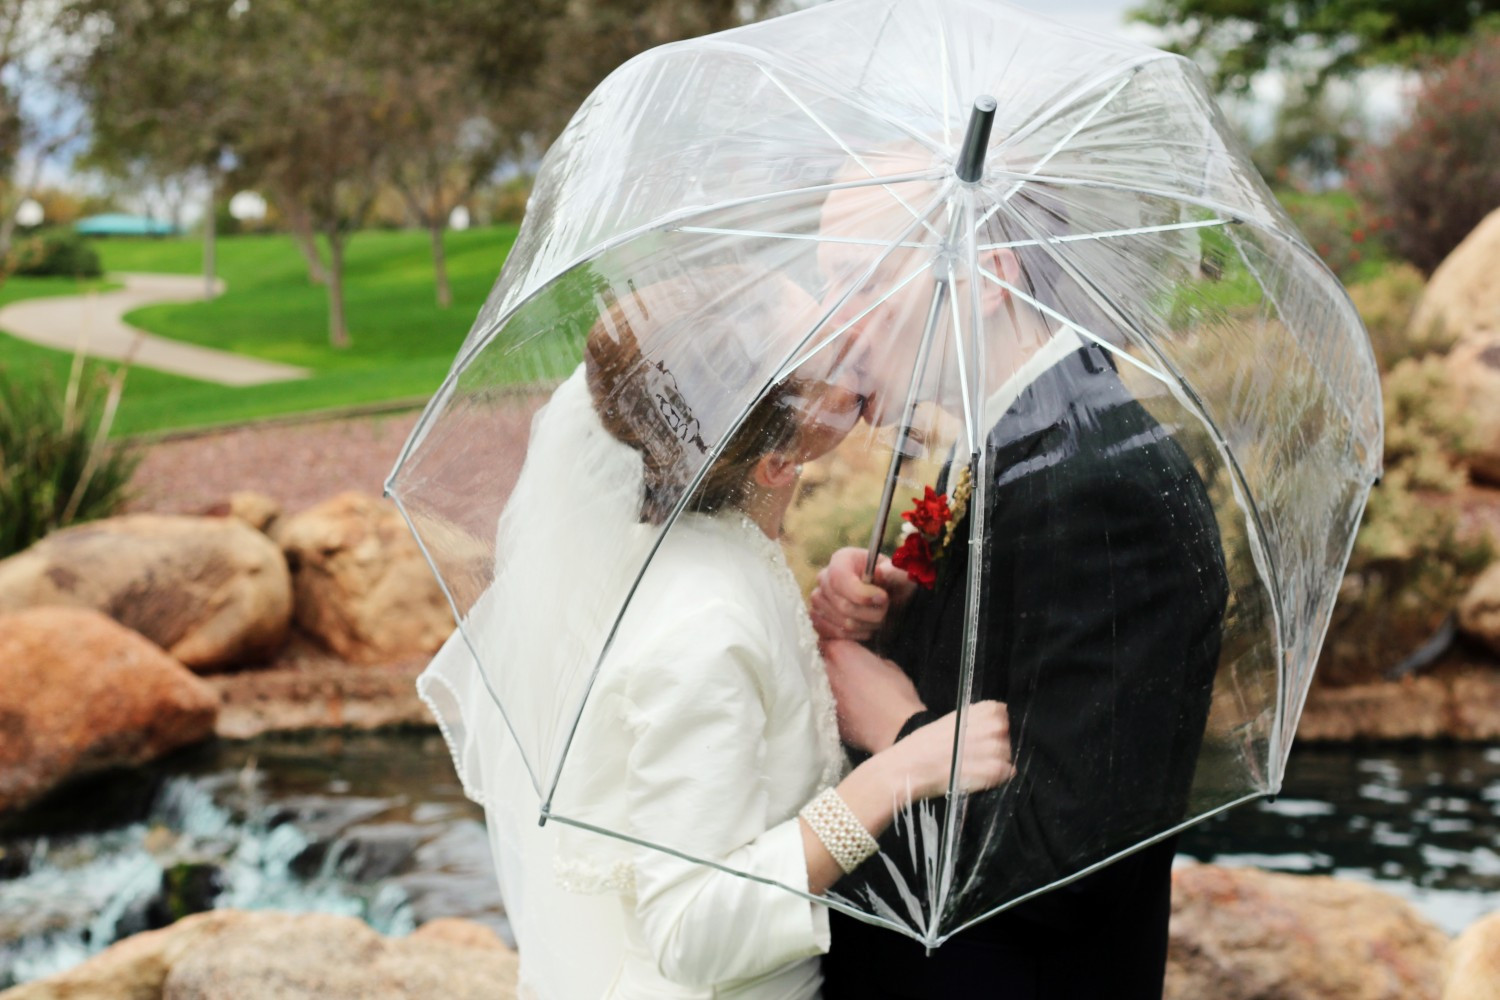 Прозрачный зонт на свадьбу